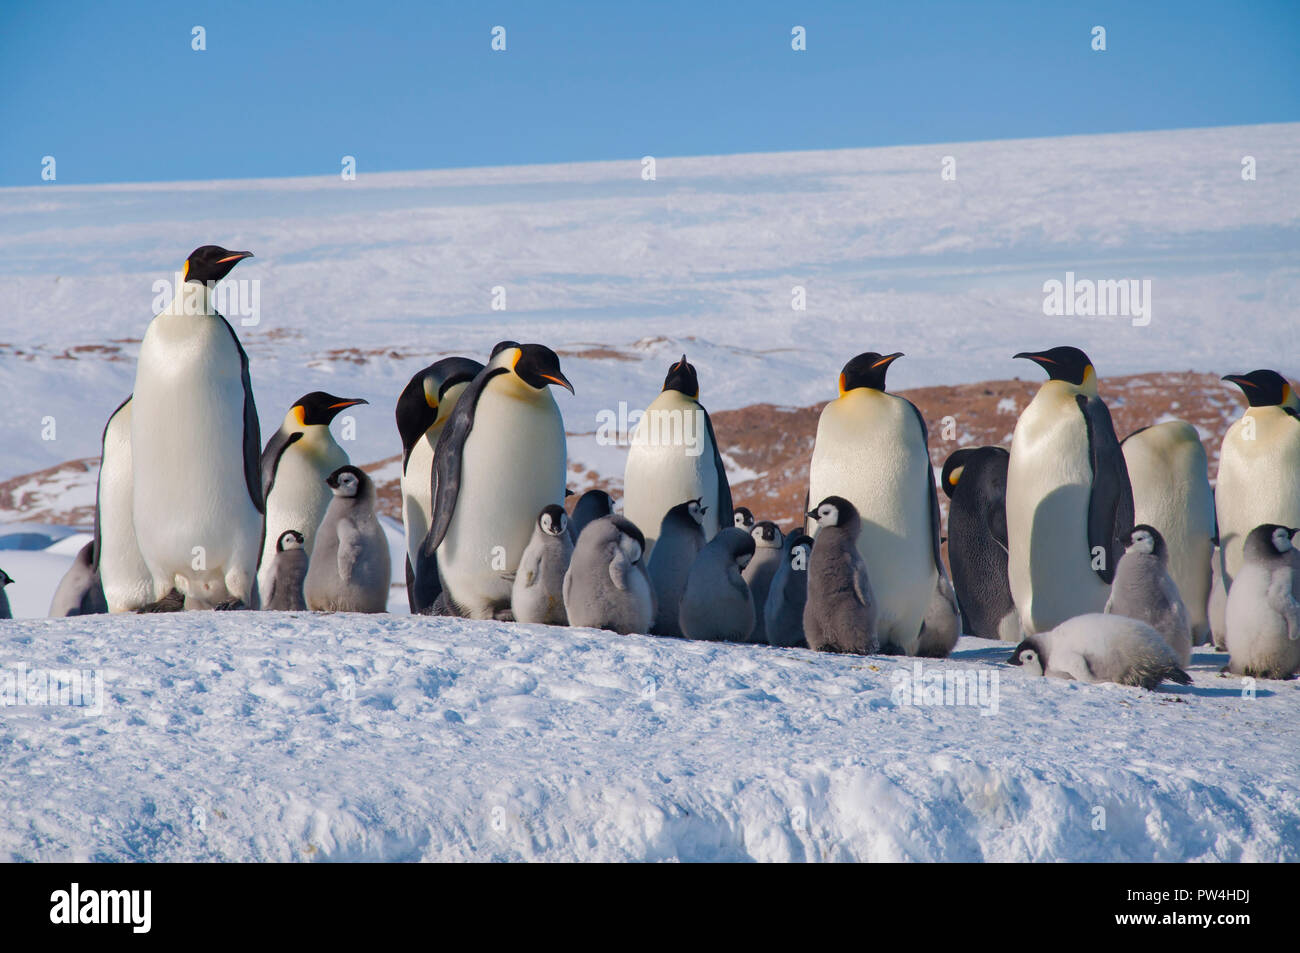 Colonia, gregge - pinguini imperatore in Antartide. I pinguini adulti stand in una giornata di sole con i loro cuccioli nella neve. Antartico. Foto Stock